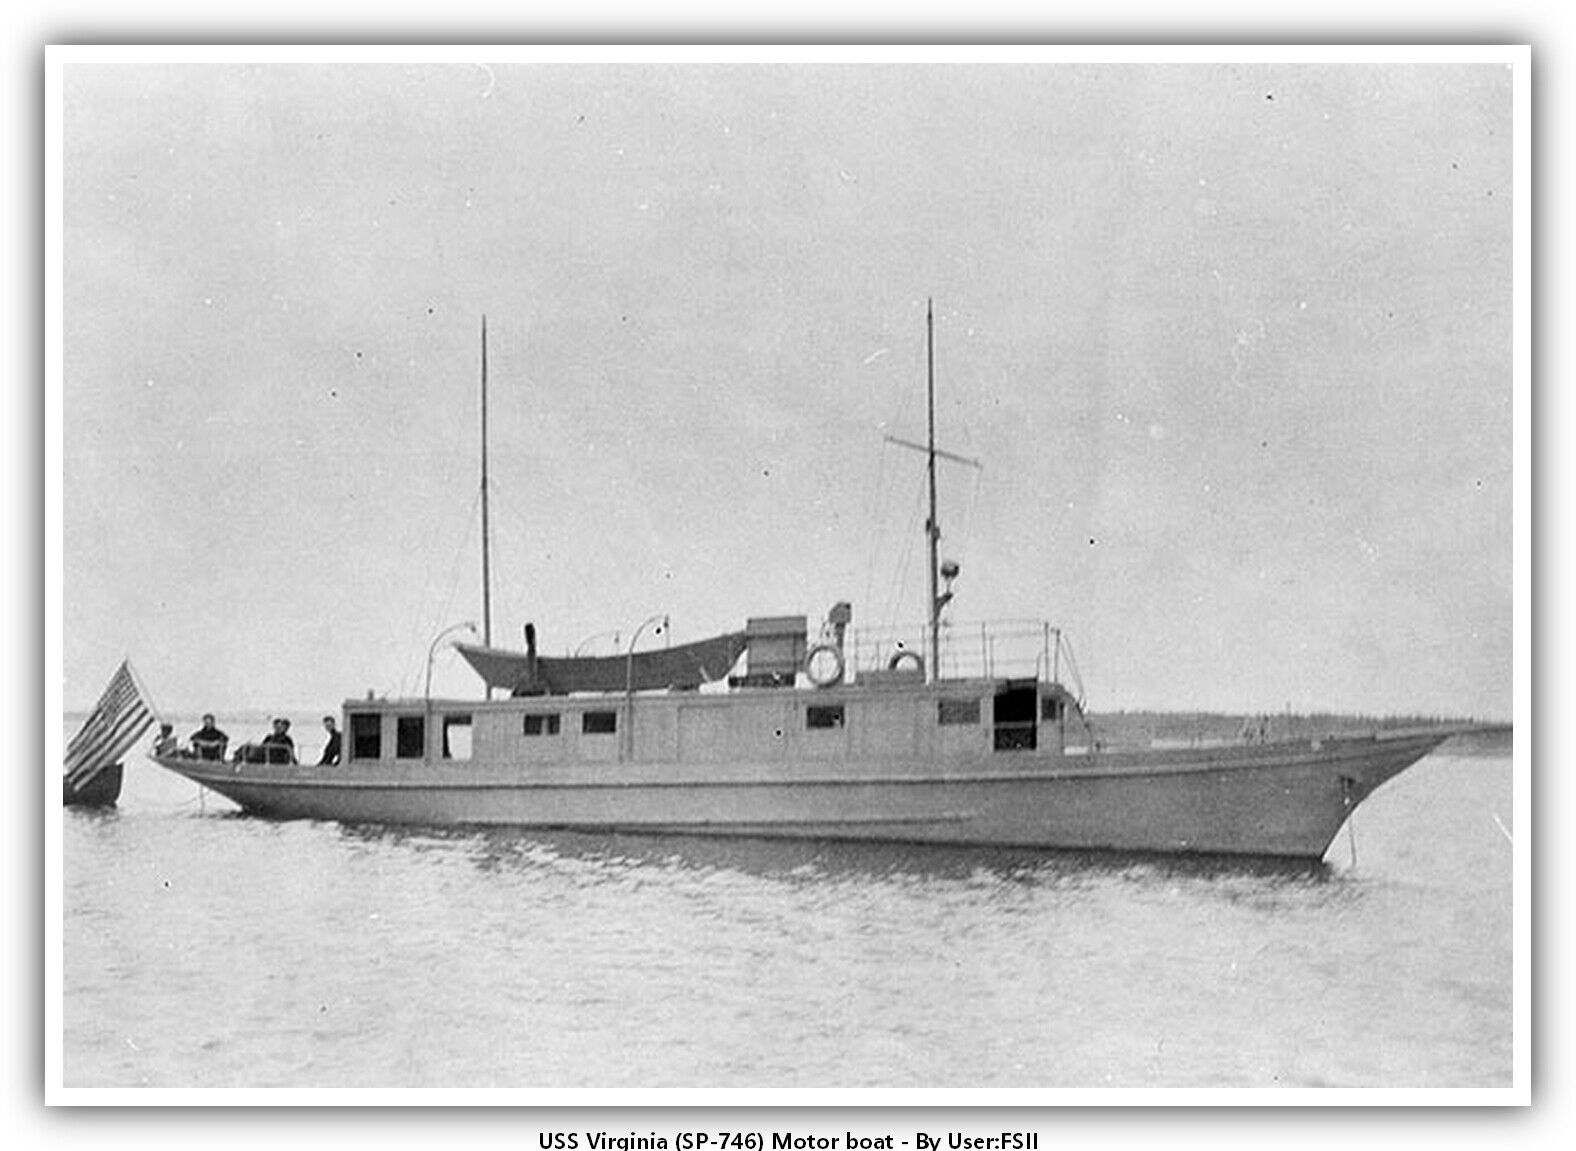 USS Virginia (SP-746) Motor boat